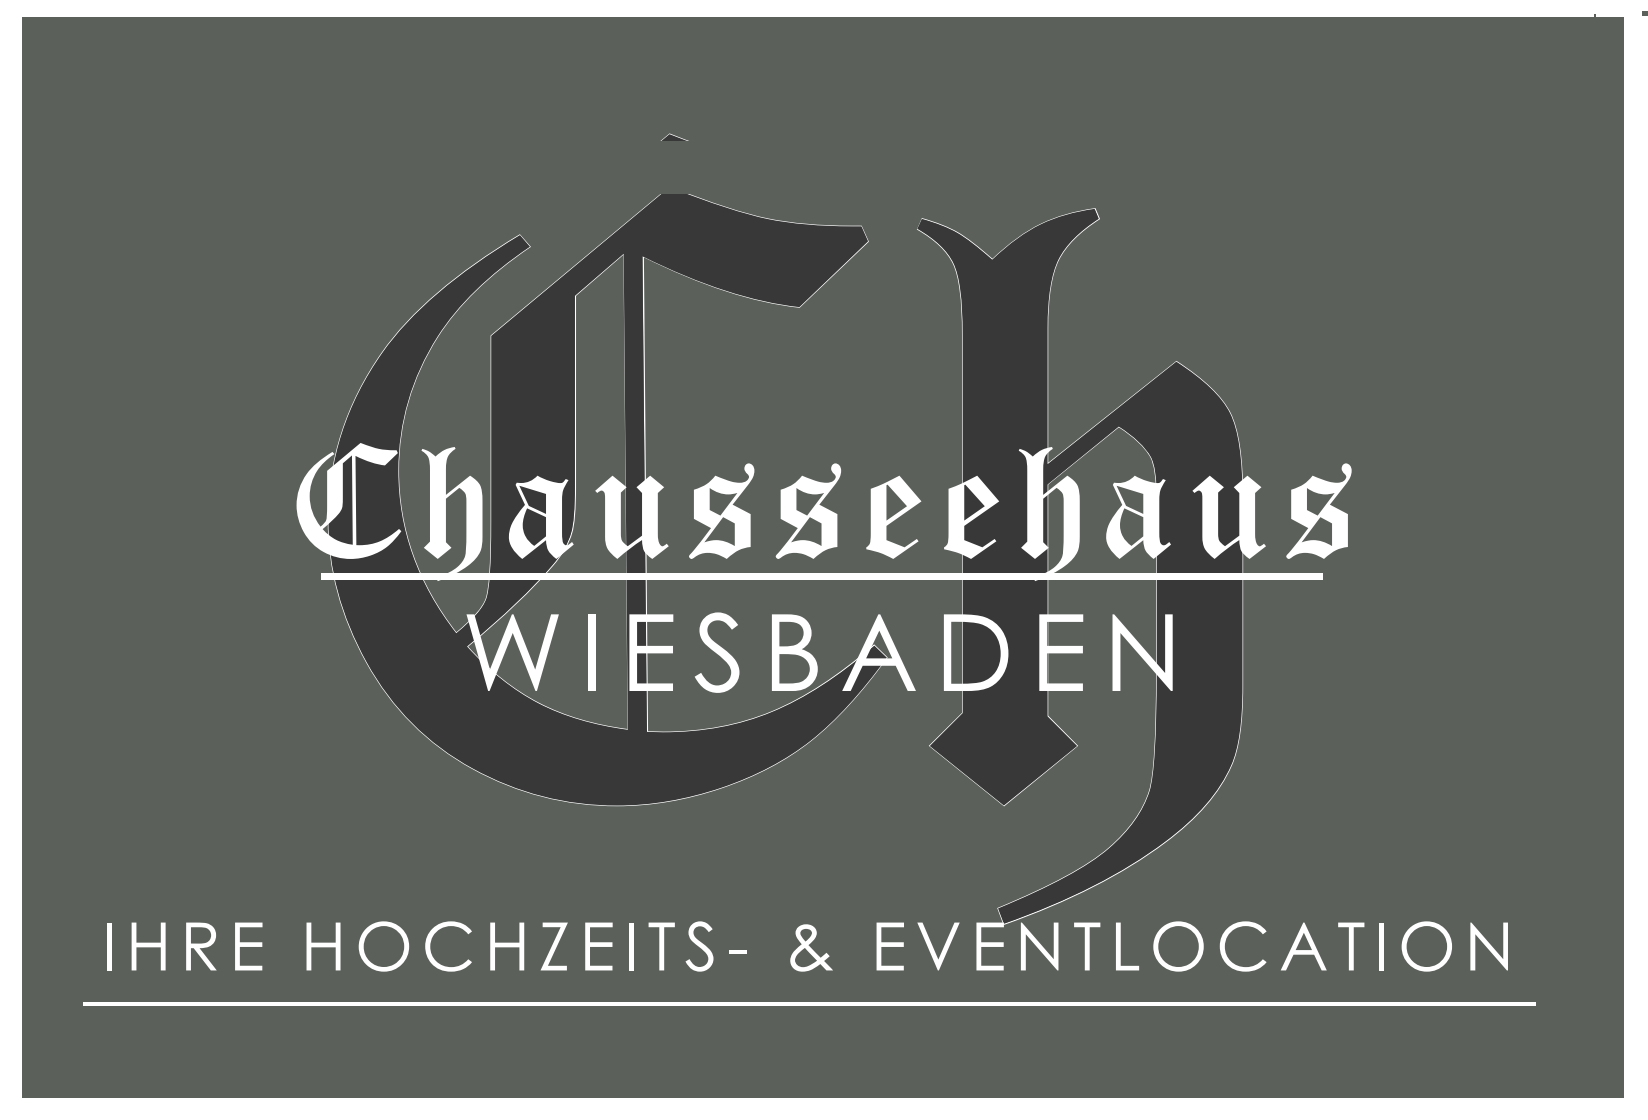 Chaussehaus Wiesbaden attached image